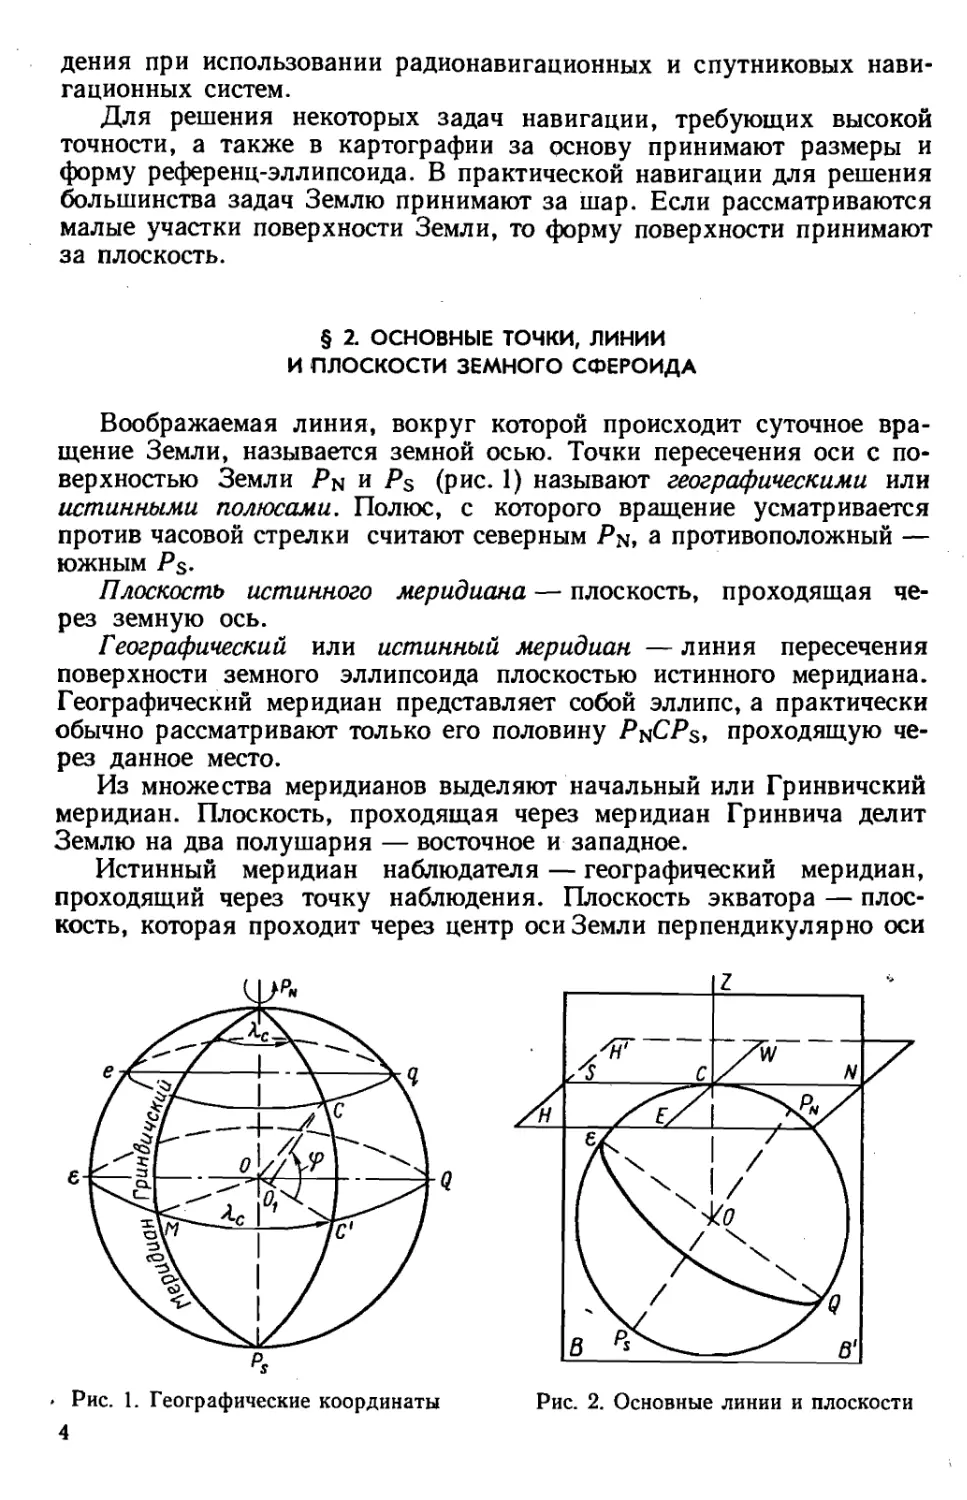 2. Основные точки, линии и плоскости земного сфероида.